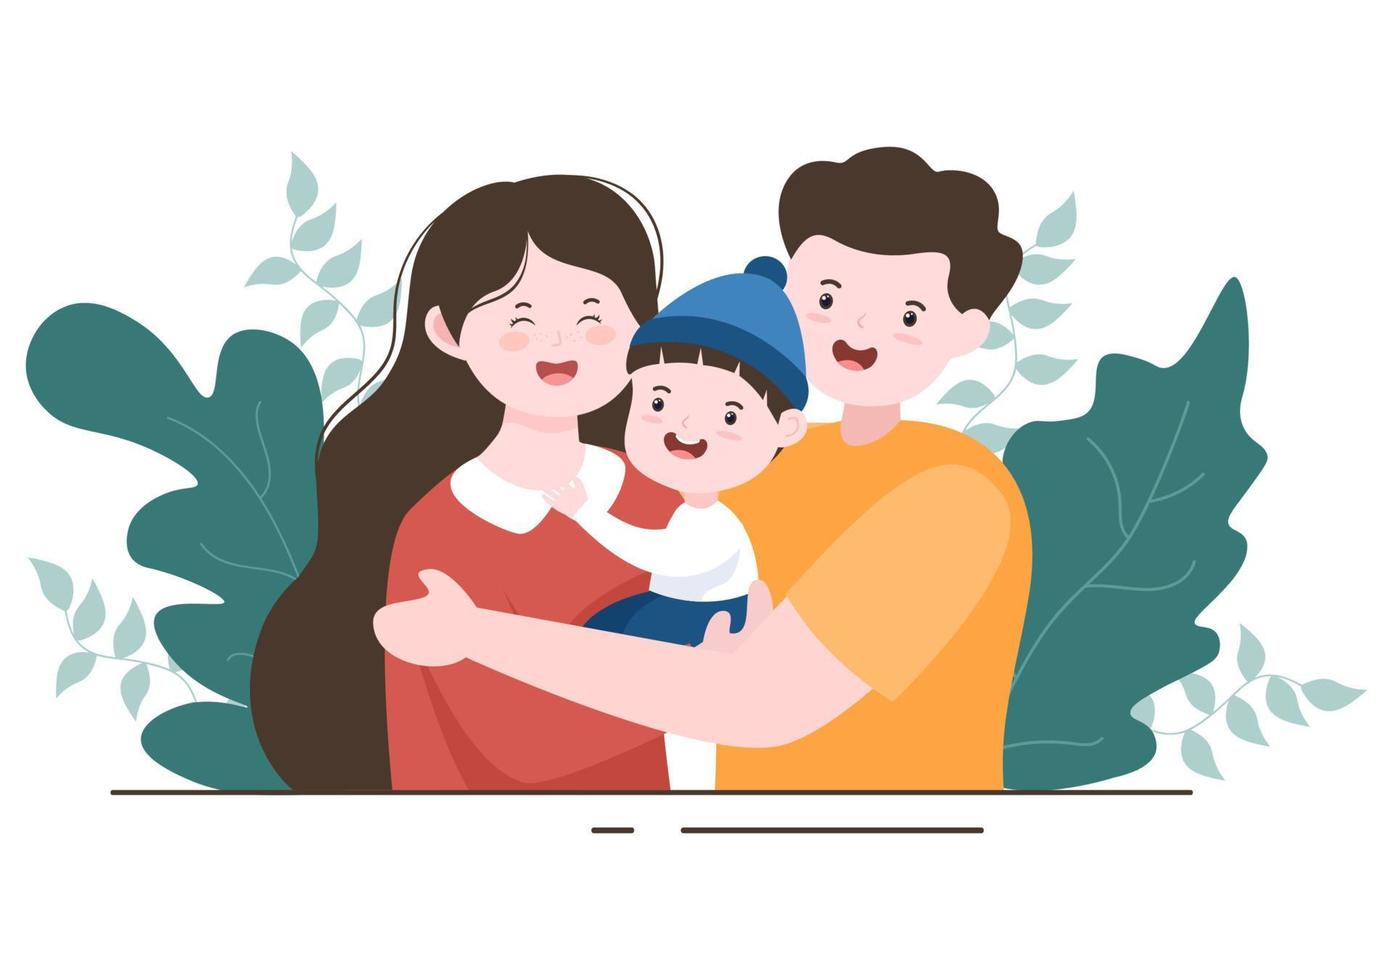 crianza de madre, padre e hijos abrazándose unos a otros en una familia amorosa. Ilustración de vector de fondo de dibujos animados lindo para banner o psicología